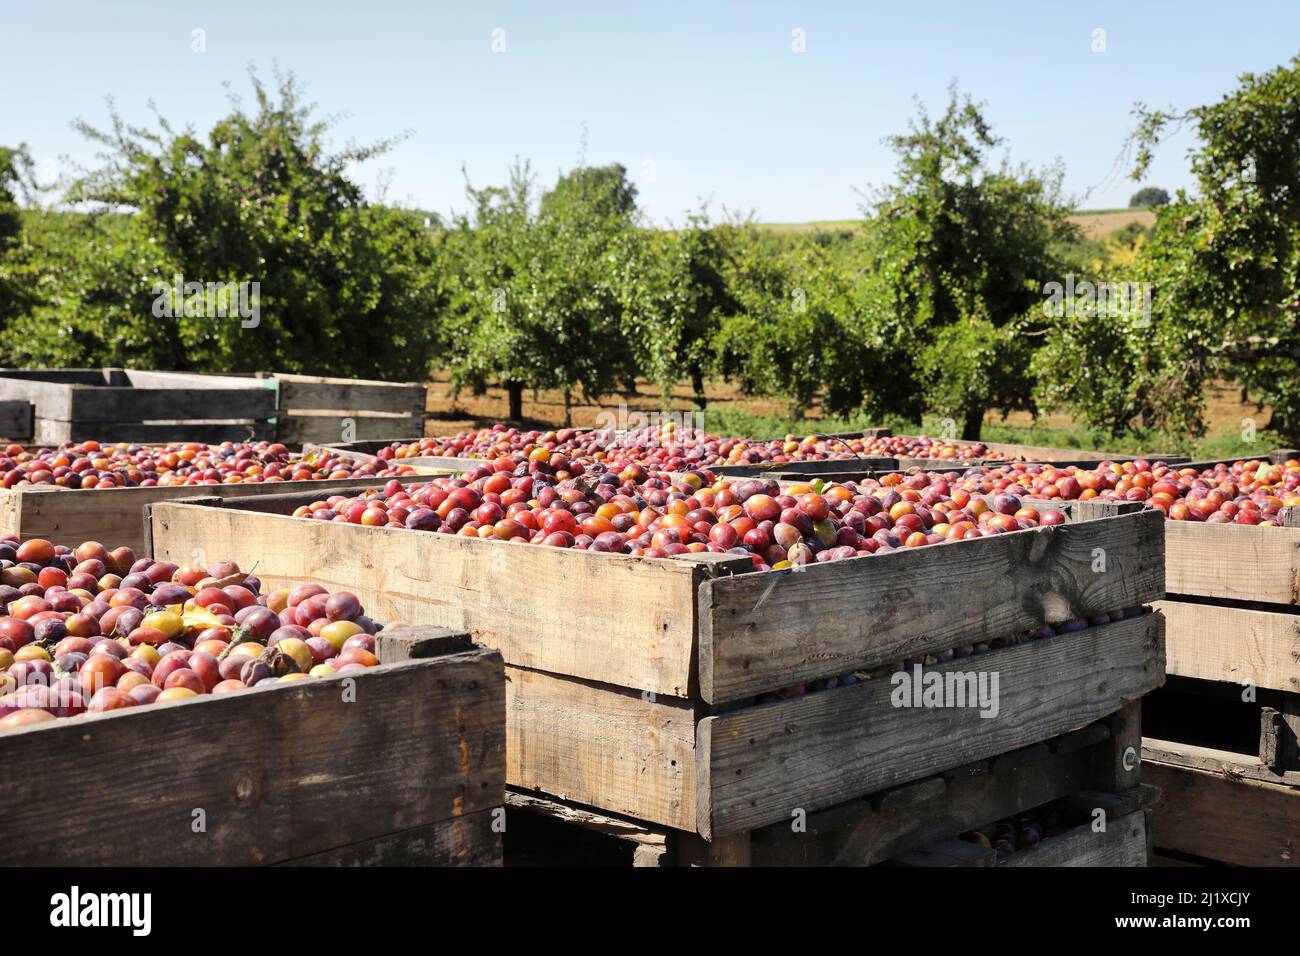 Culture des pruneaux d'Agen : vergers de pruniers d'Ente avec prunes mûres en caisses pendant la récolte, entre la mi-août et la mi-septembre Banque D'Images